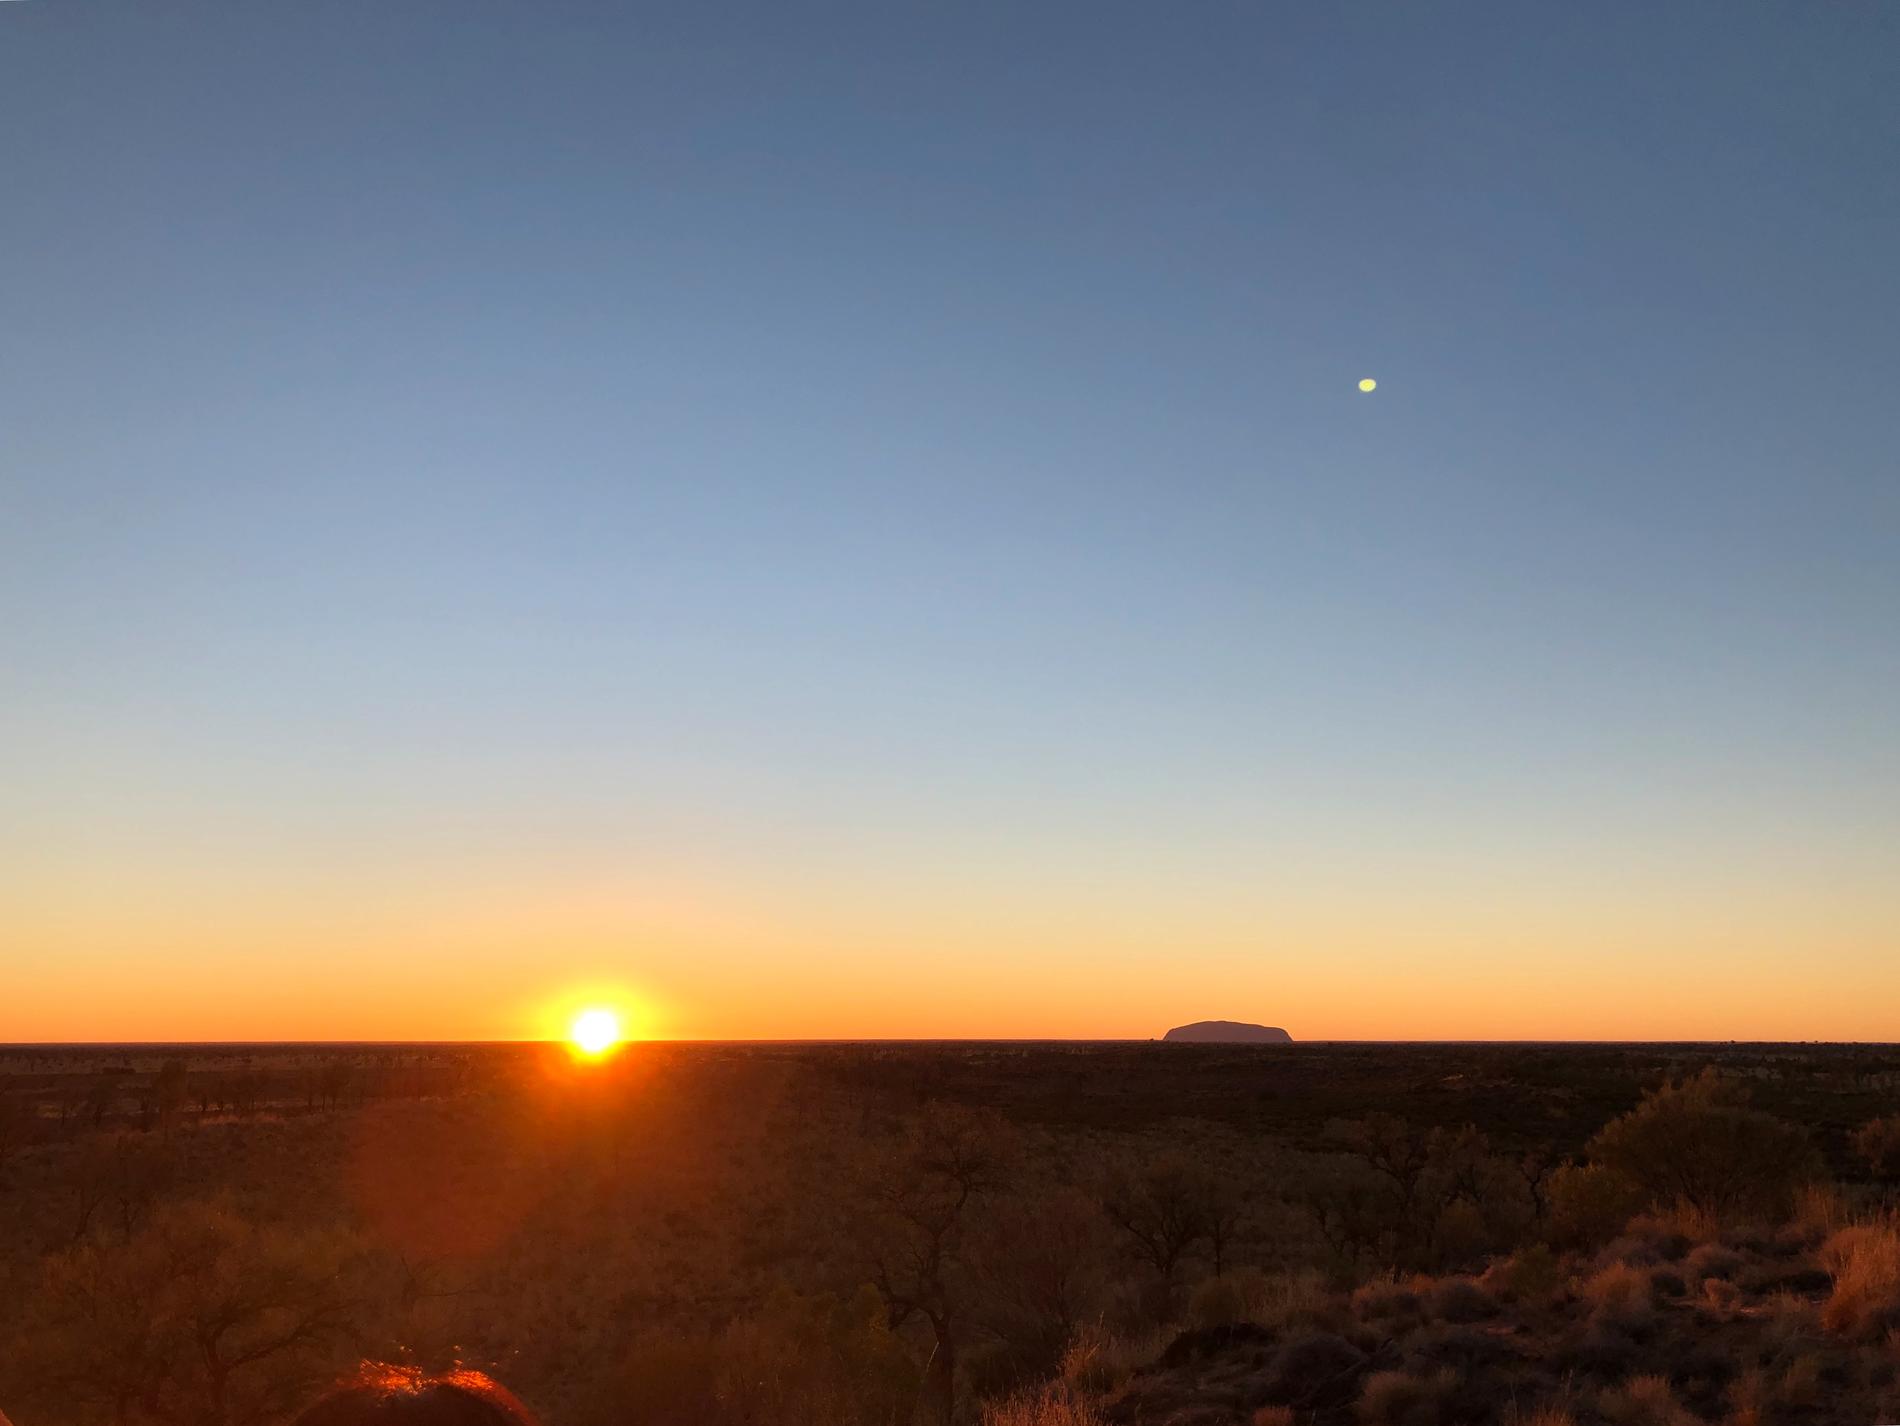 Uluru (Ayers Rock) utmärker sig på många mils håll i det platta ökenlandskapet i centrala Australien. Här fotograferad i soluppgången en kall vintermorgon.